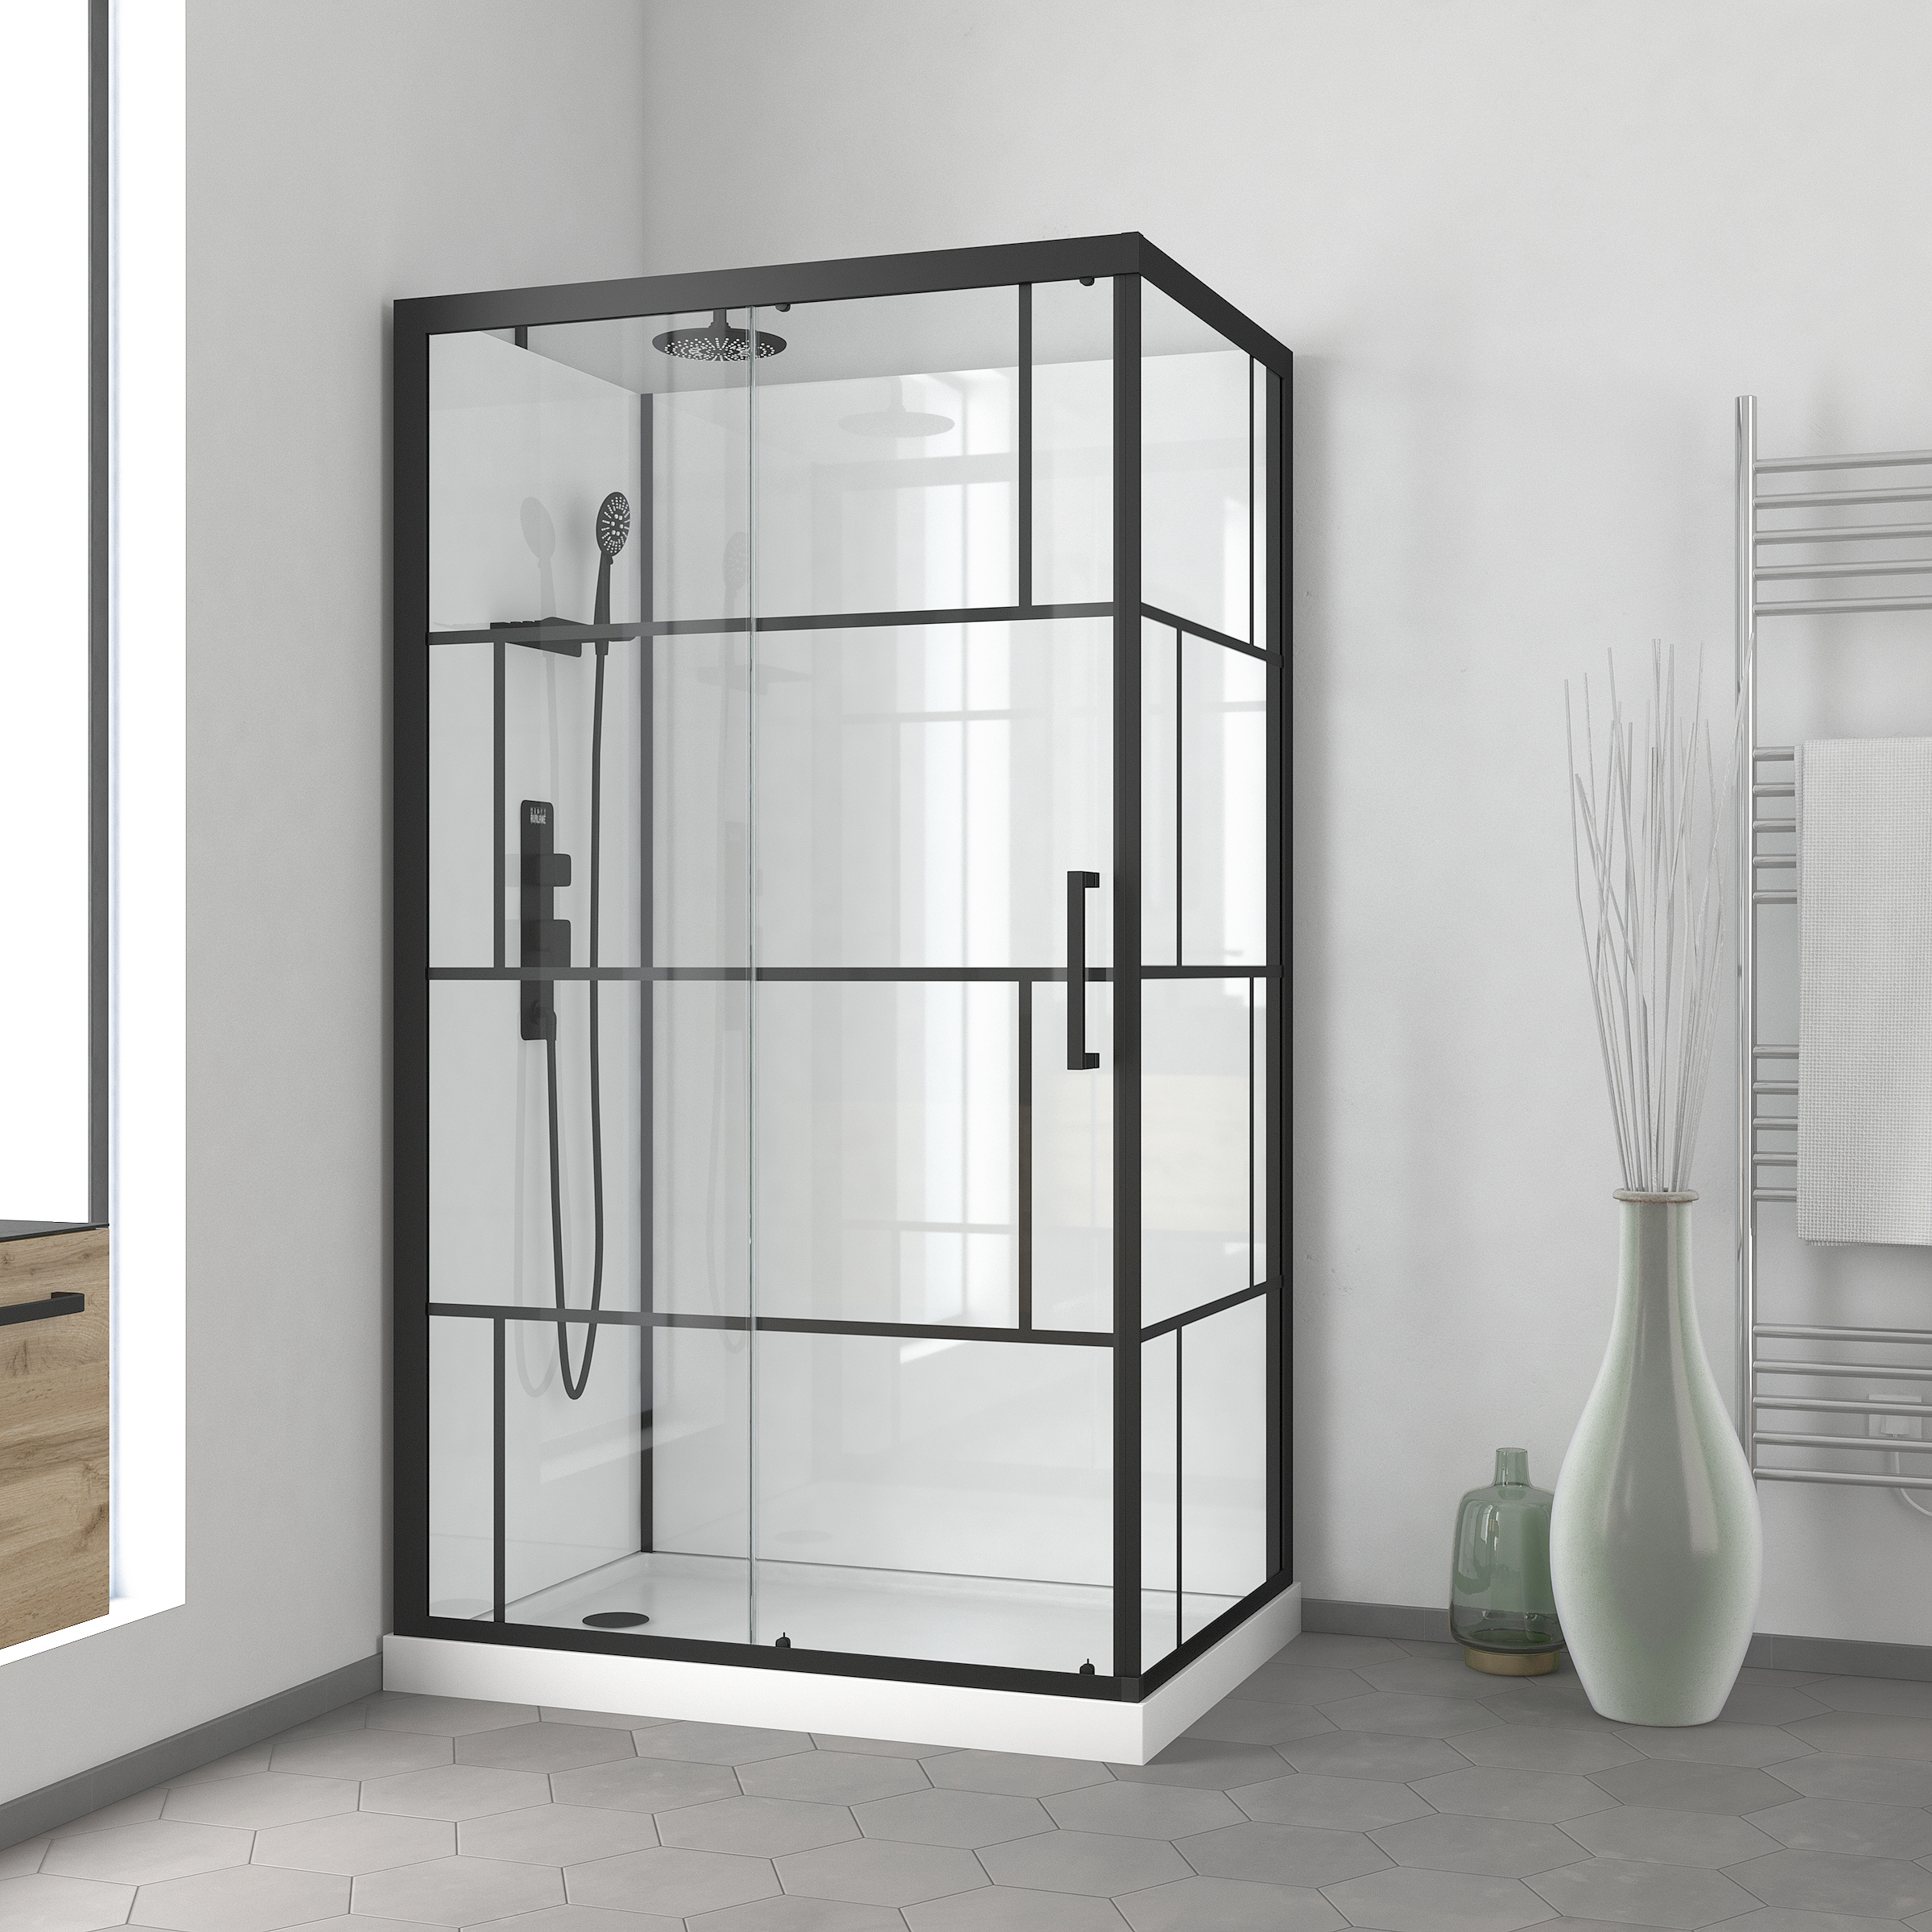 Les produits   Douche, baignoire - Cabine de douche carrée  80x80x213 cm blanc et noir